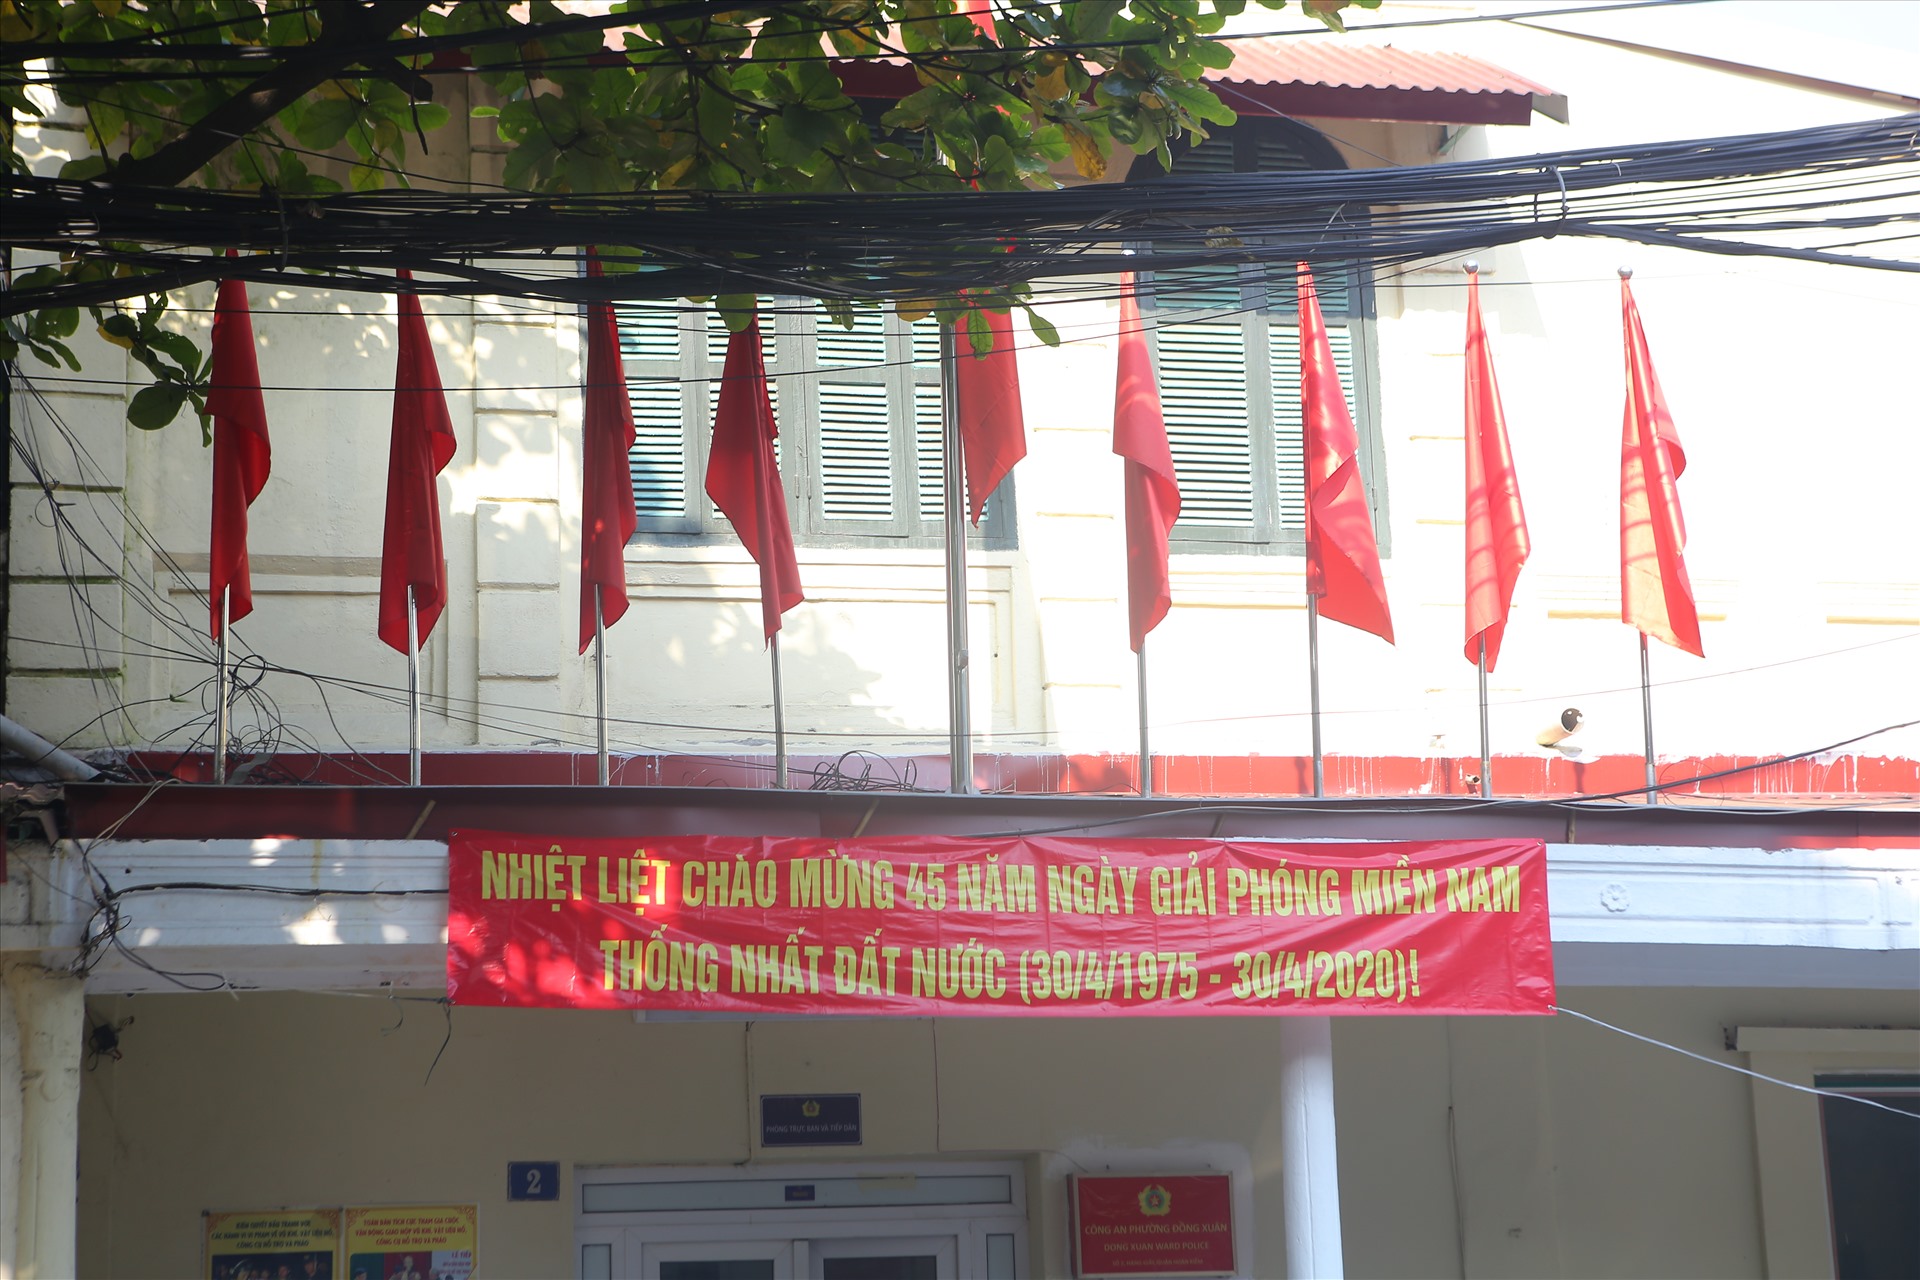 Tại trụ sở Công an phường Đồng Tâm (quận Hoàn Kiếm) với cờ đỏ, băng rôn ghi: “Nhiệt liệt chào mừng 45 năm Ngày Giải phóng miền Nam, thống nhất đất nước (30.4.1975 – 30.4.2020)”.